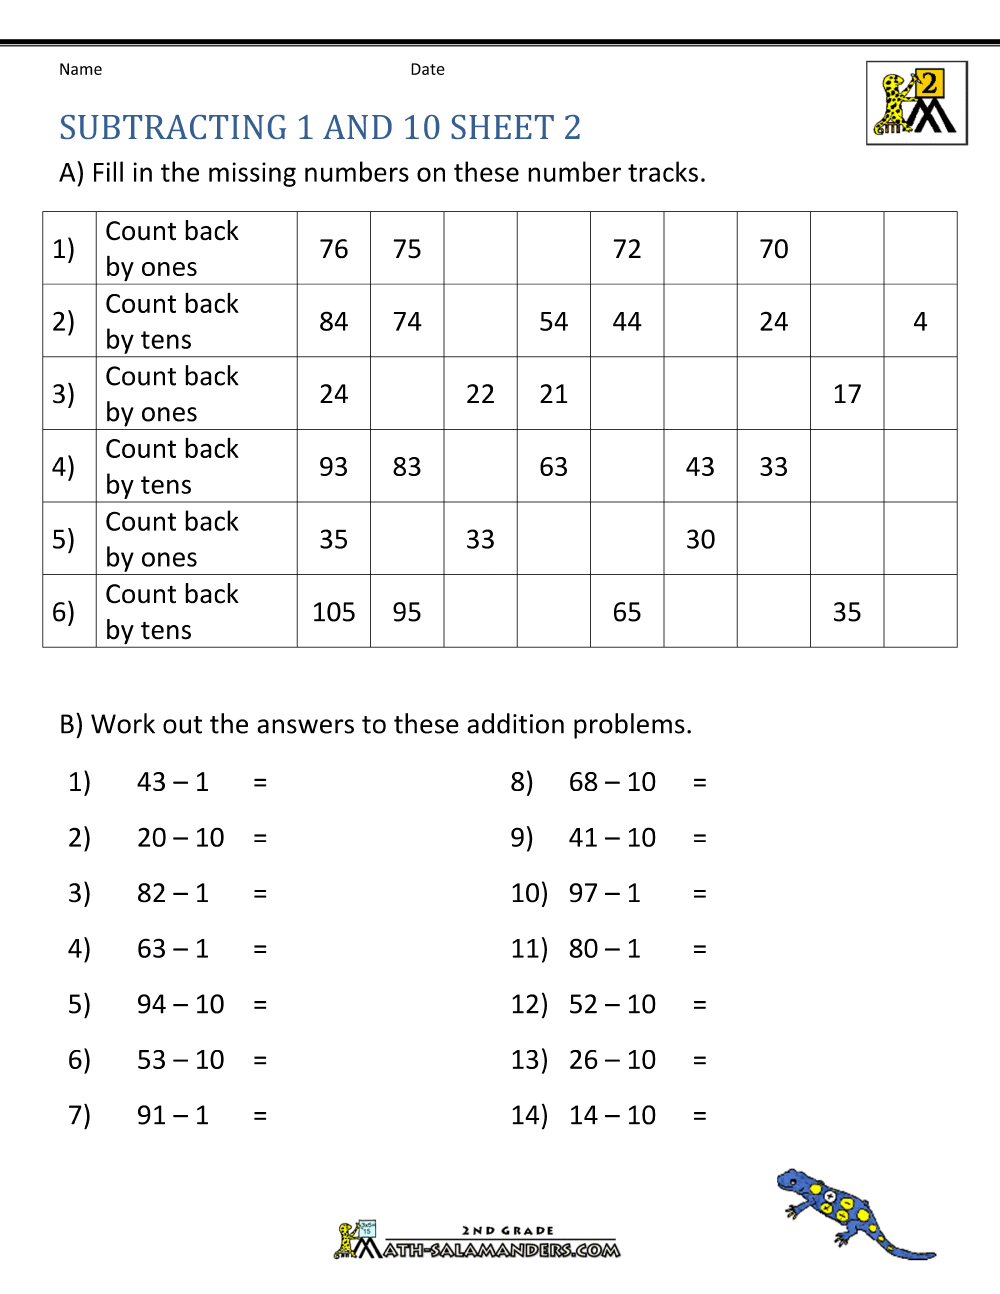 orangeflowerpatterns-get-math-worksheets-grade-2-subtraction-png